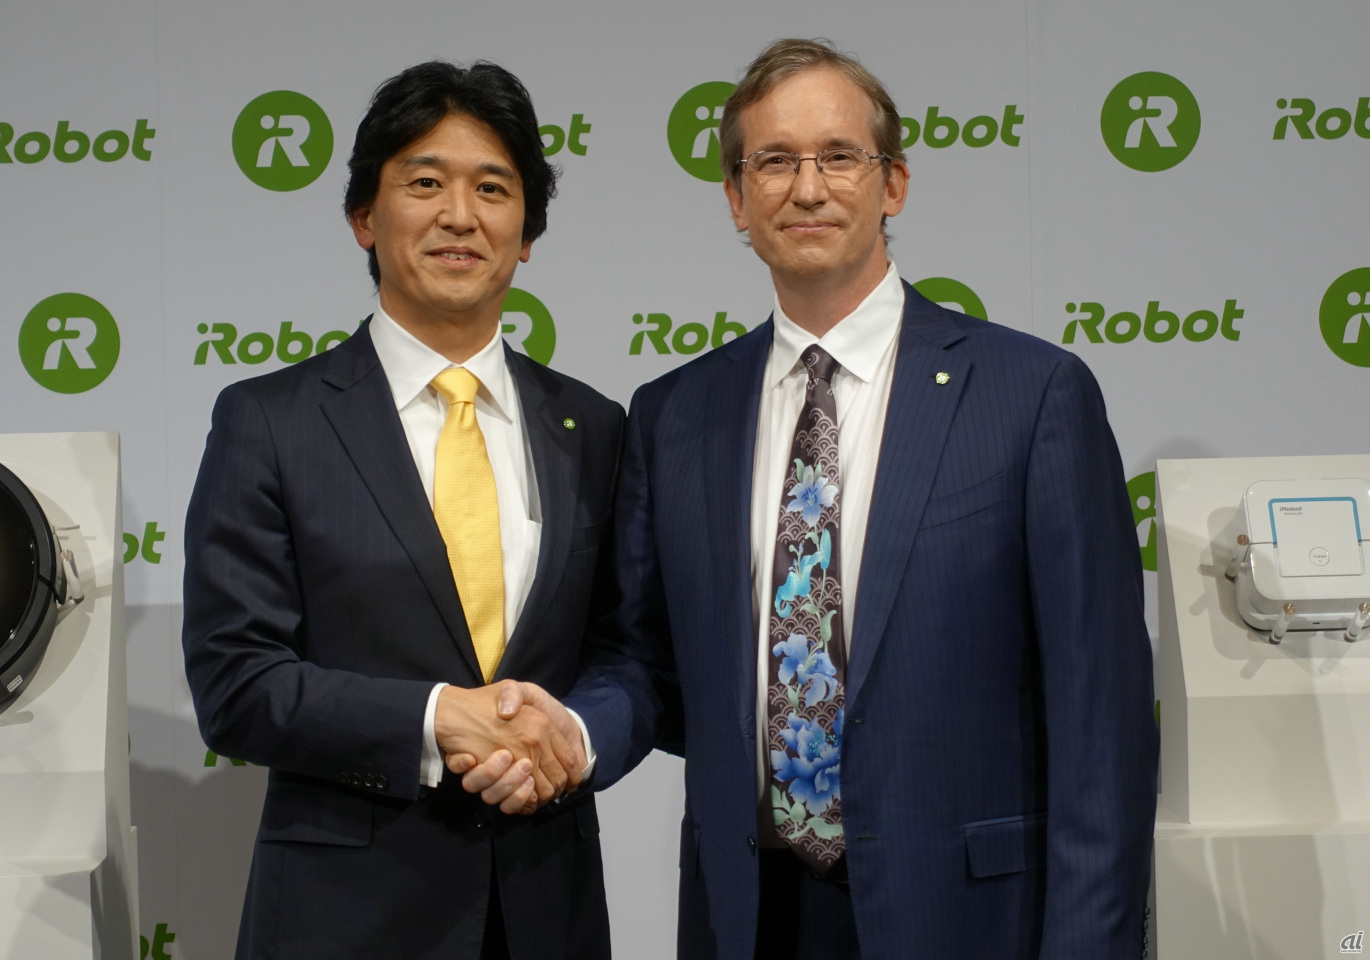 アイロボットジャパン代表執行役員社長の挽野元氏とiRobot CEO 兼 共同設立者のコリン・アングル氏